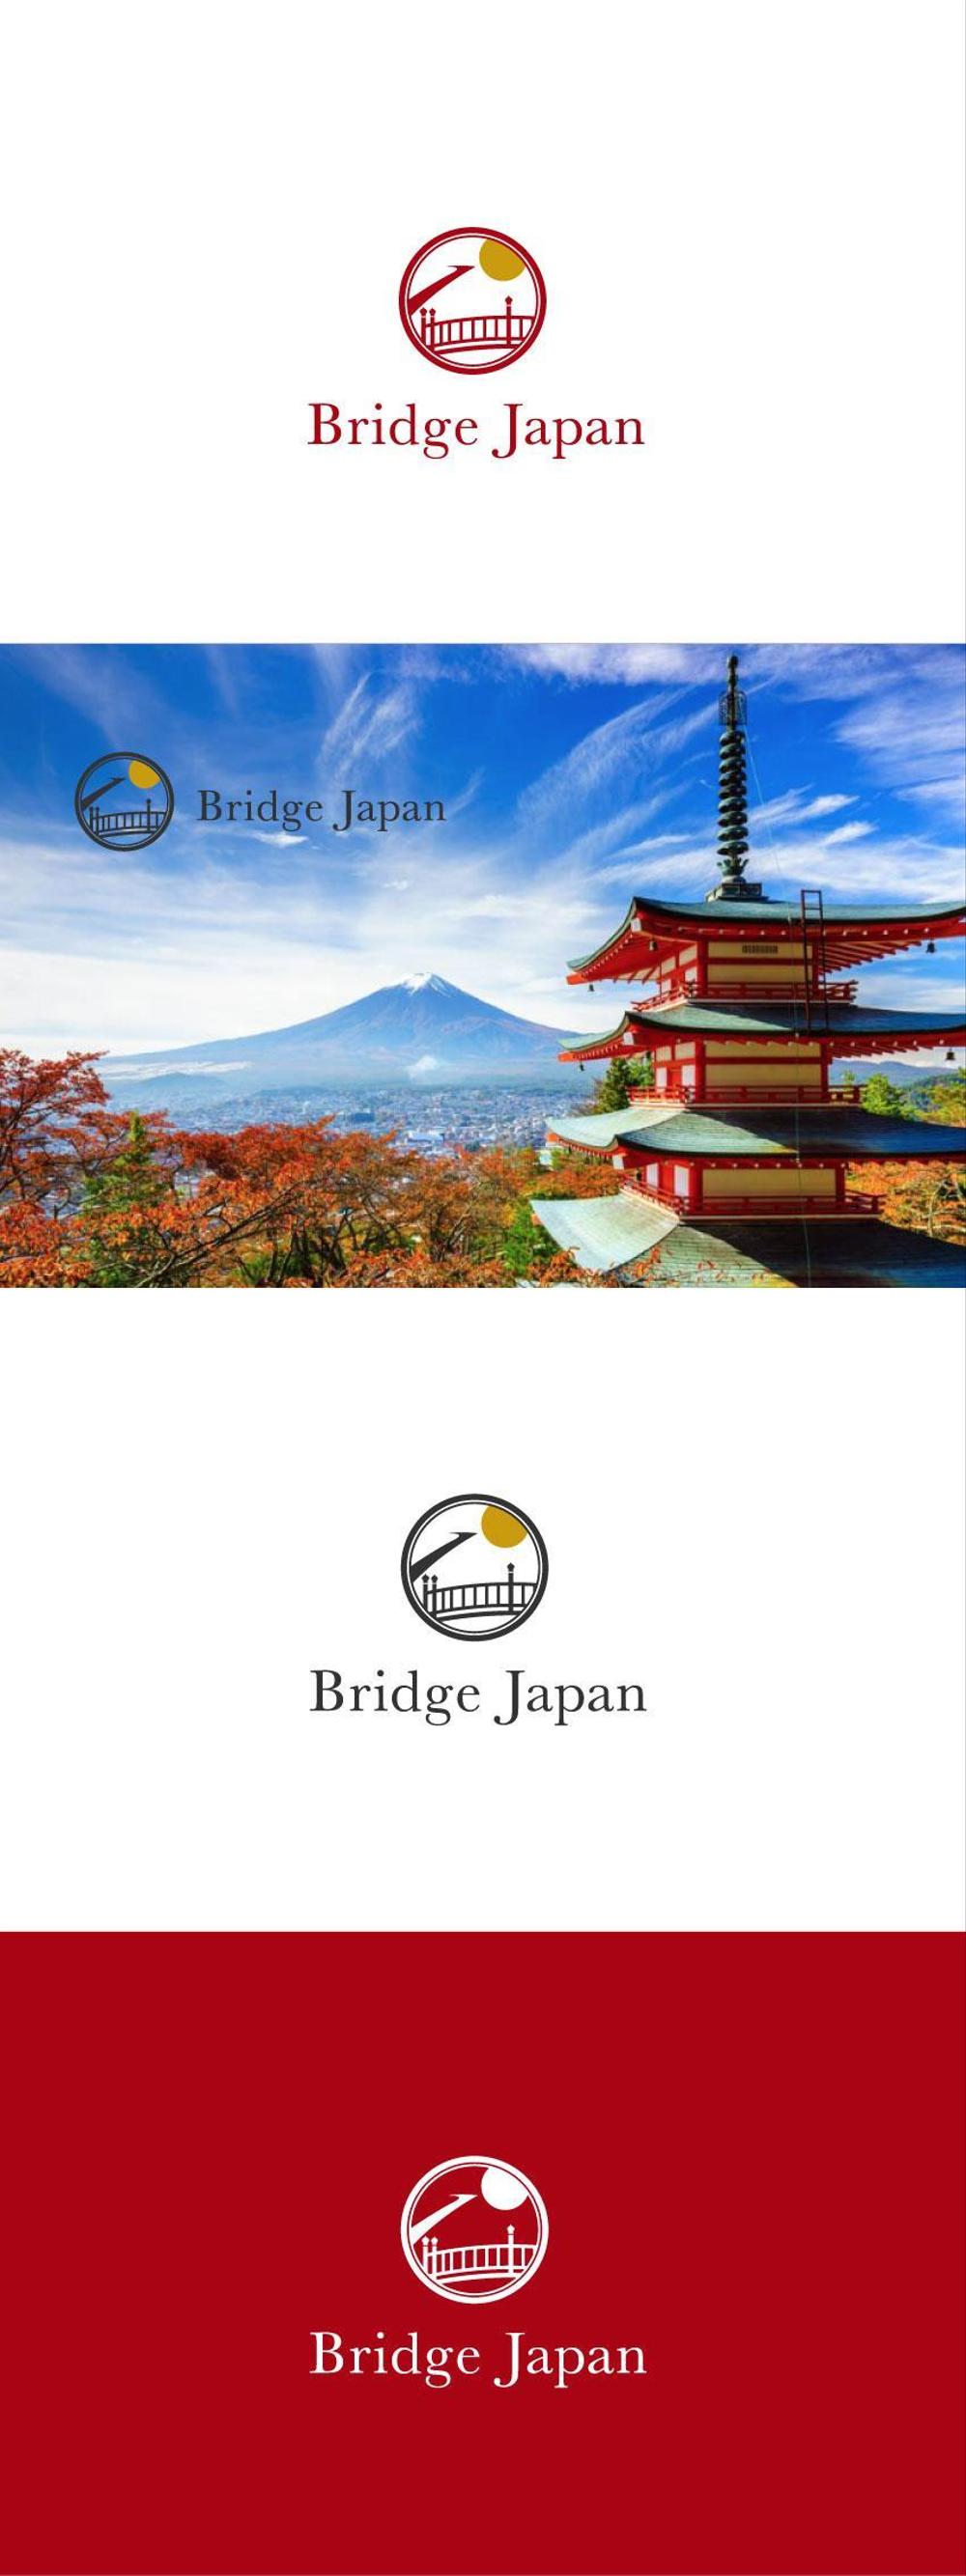 Bridge-Japan-02.jpg